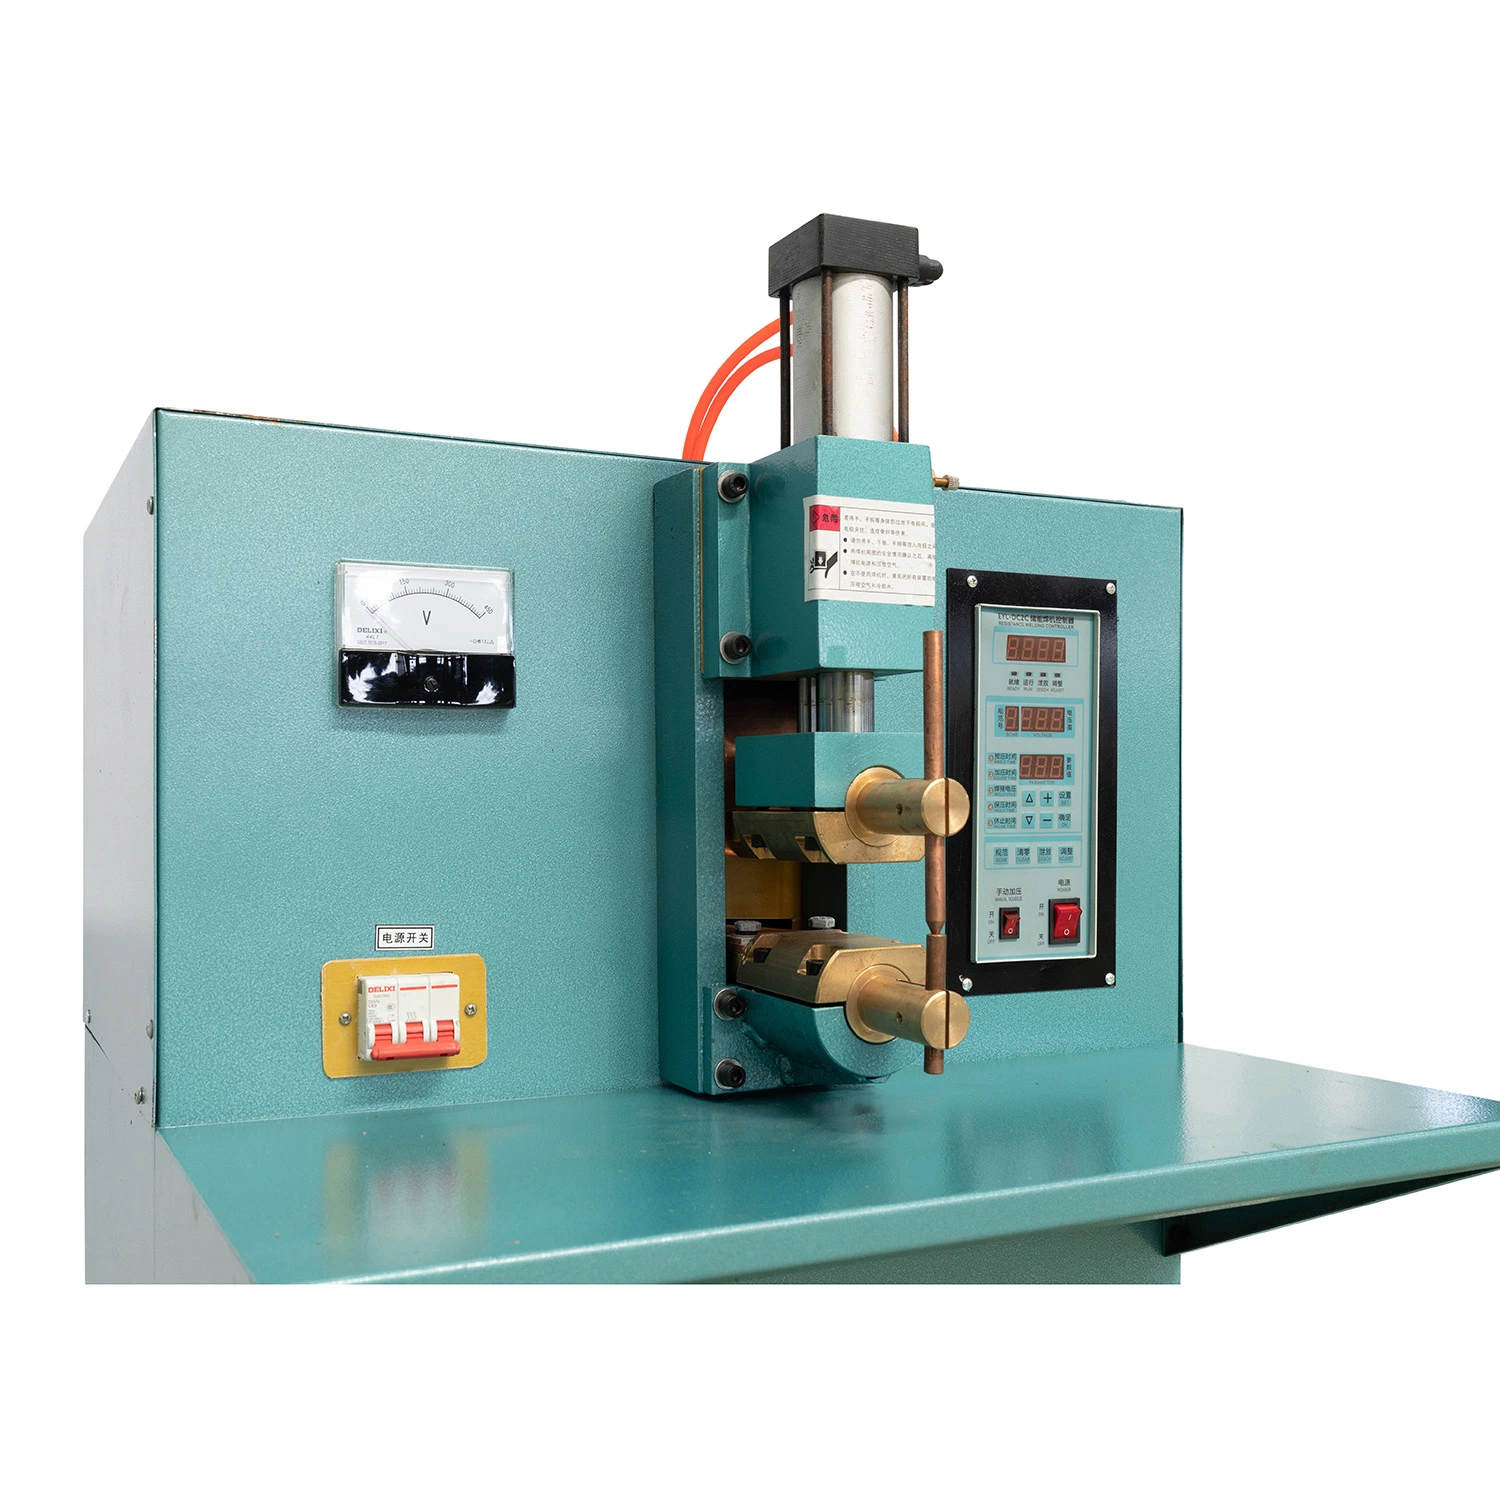 Halbautomatische Gasdruck-Spot-Schweißmaschine Mit Kapazitiver Entladung